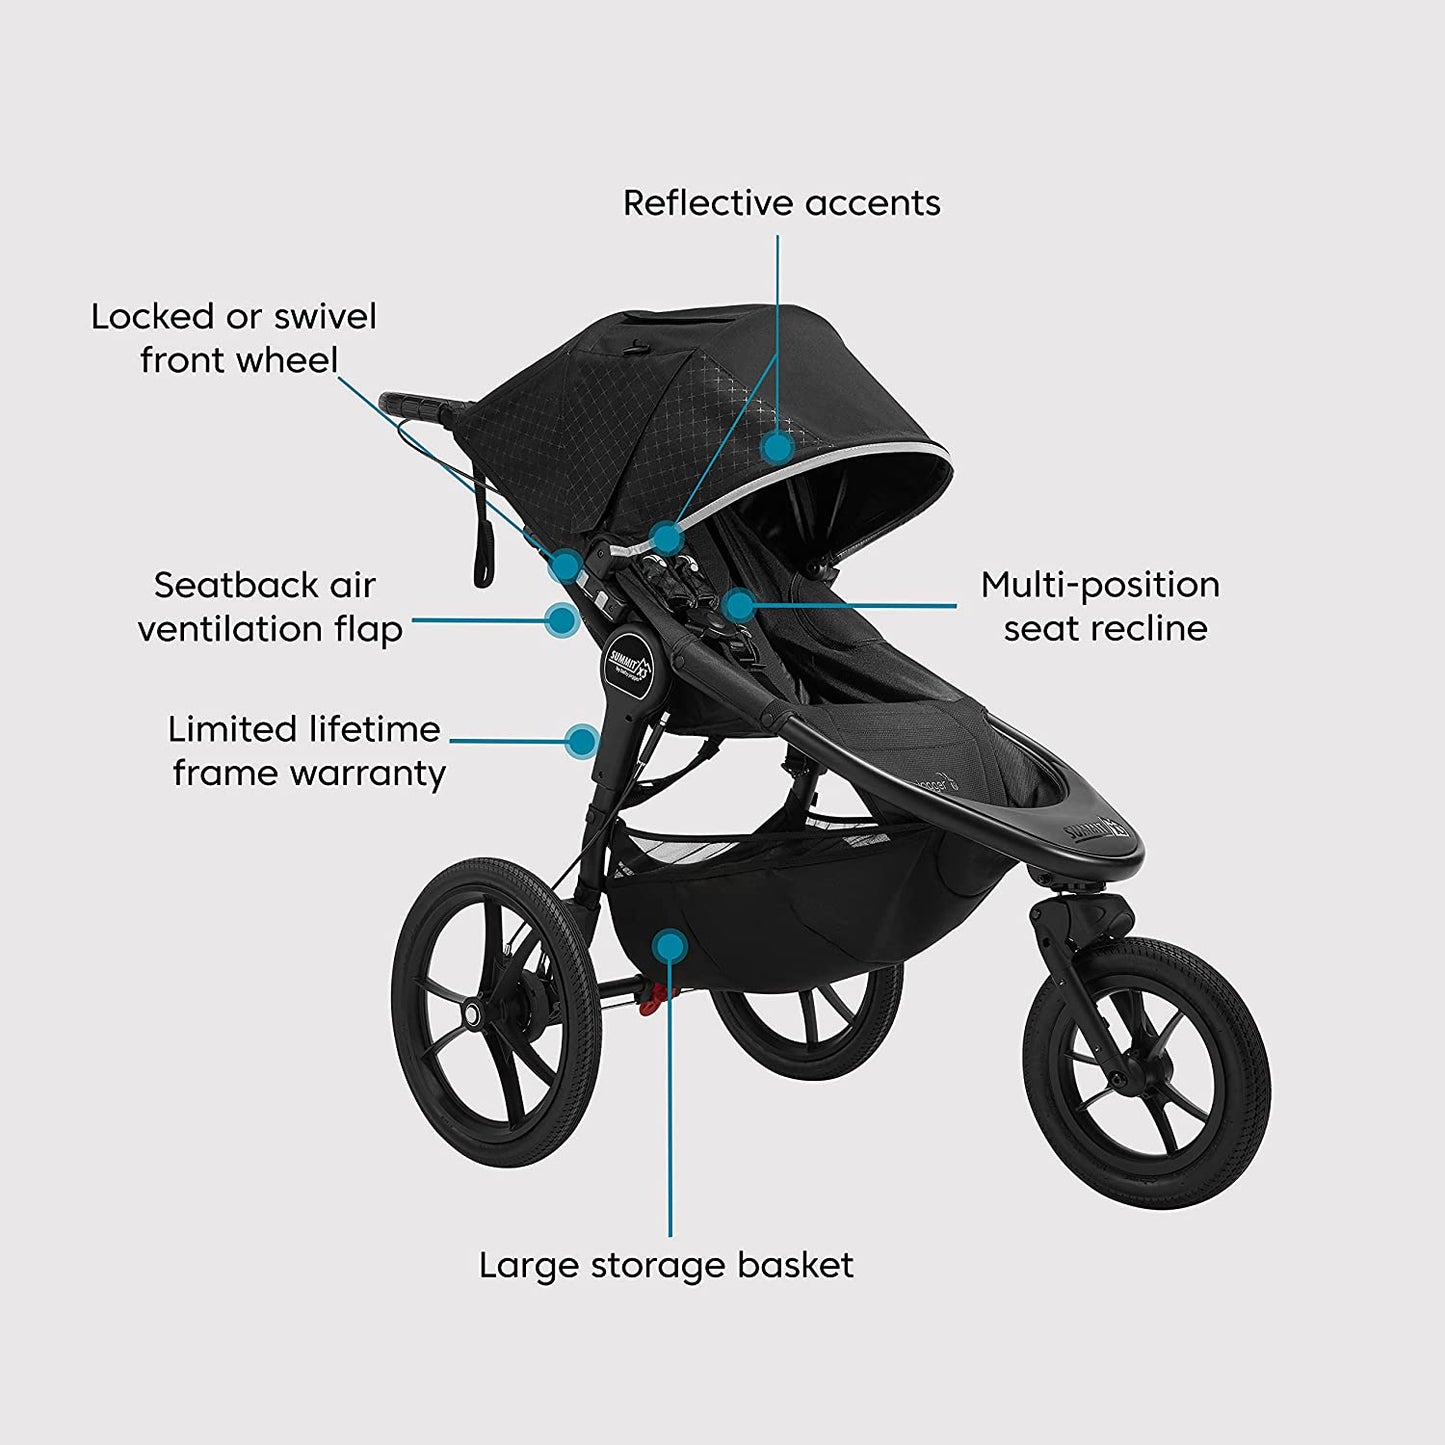 Baby Jogger - Carrinho de passeio dobrável de 3 rodas com freio de desaceleração